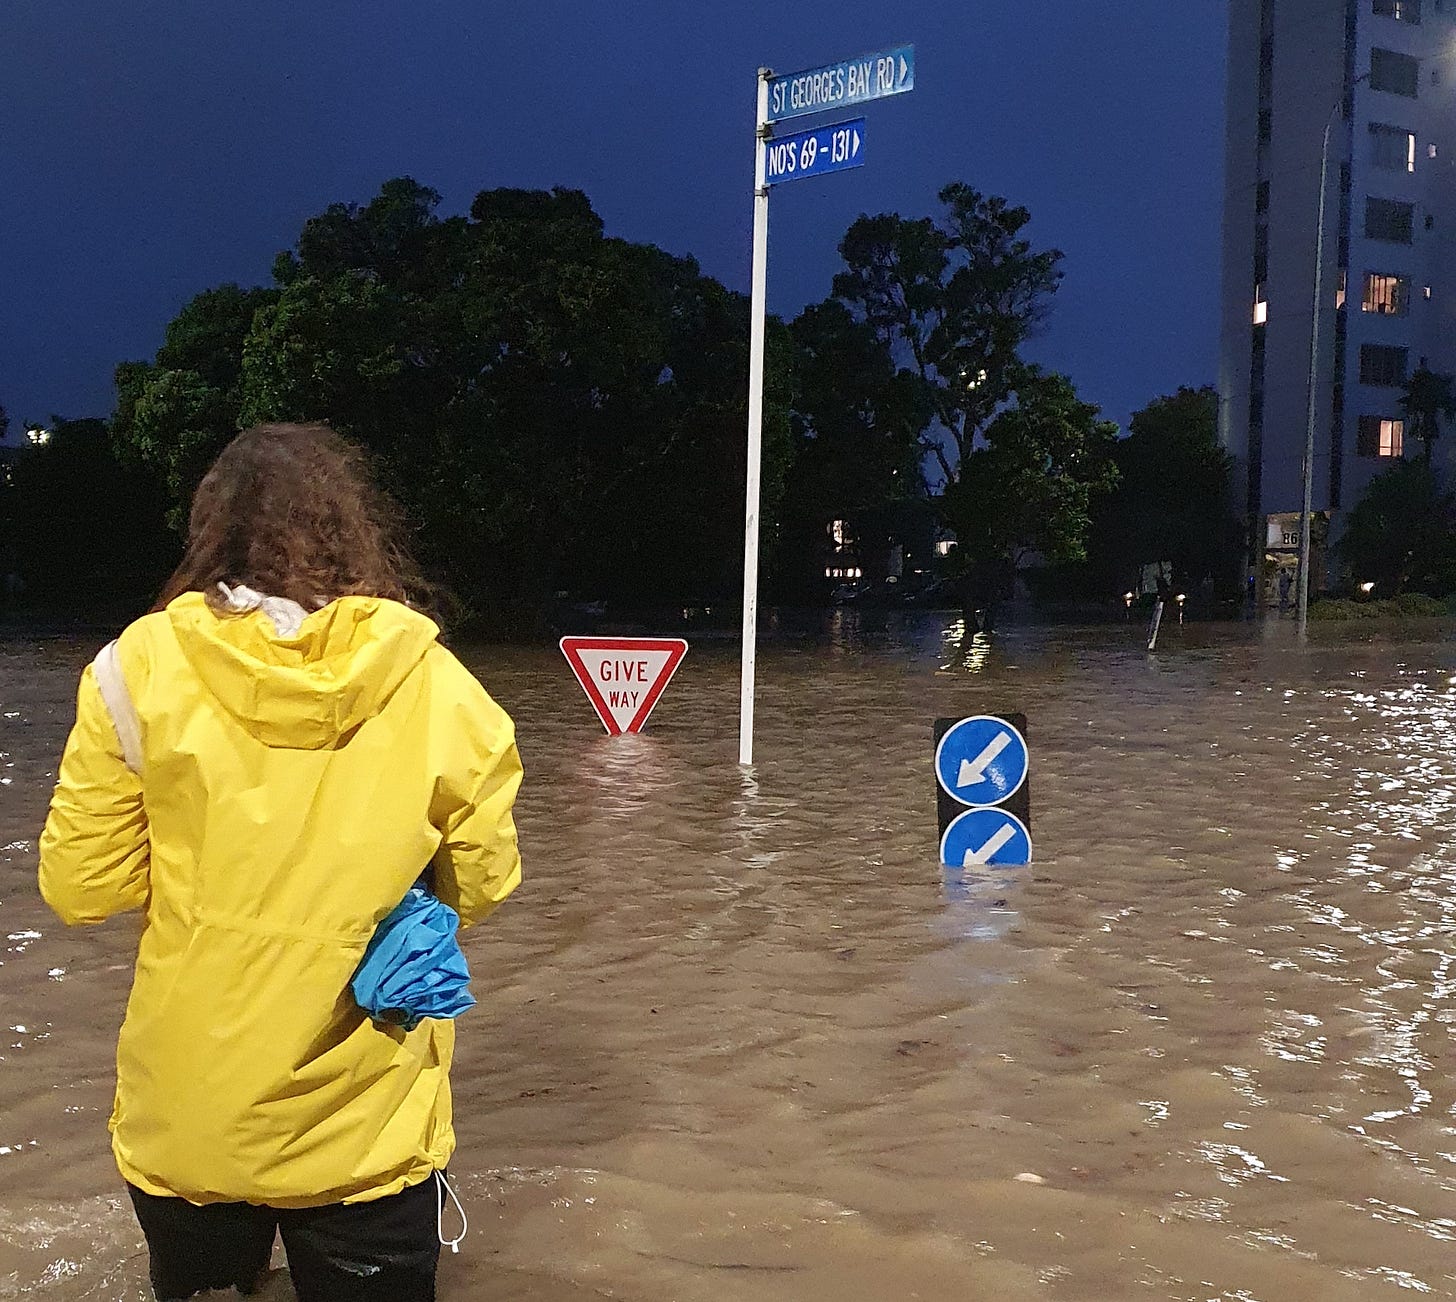 St George's Bay Road underwater